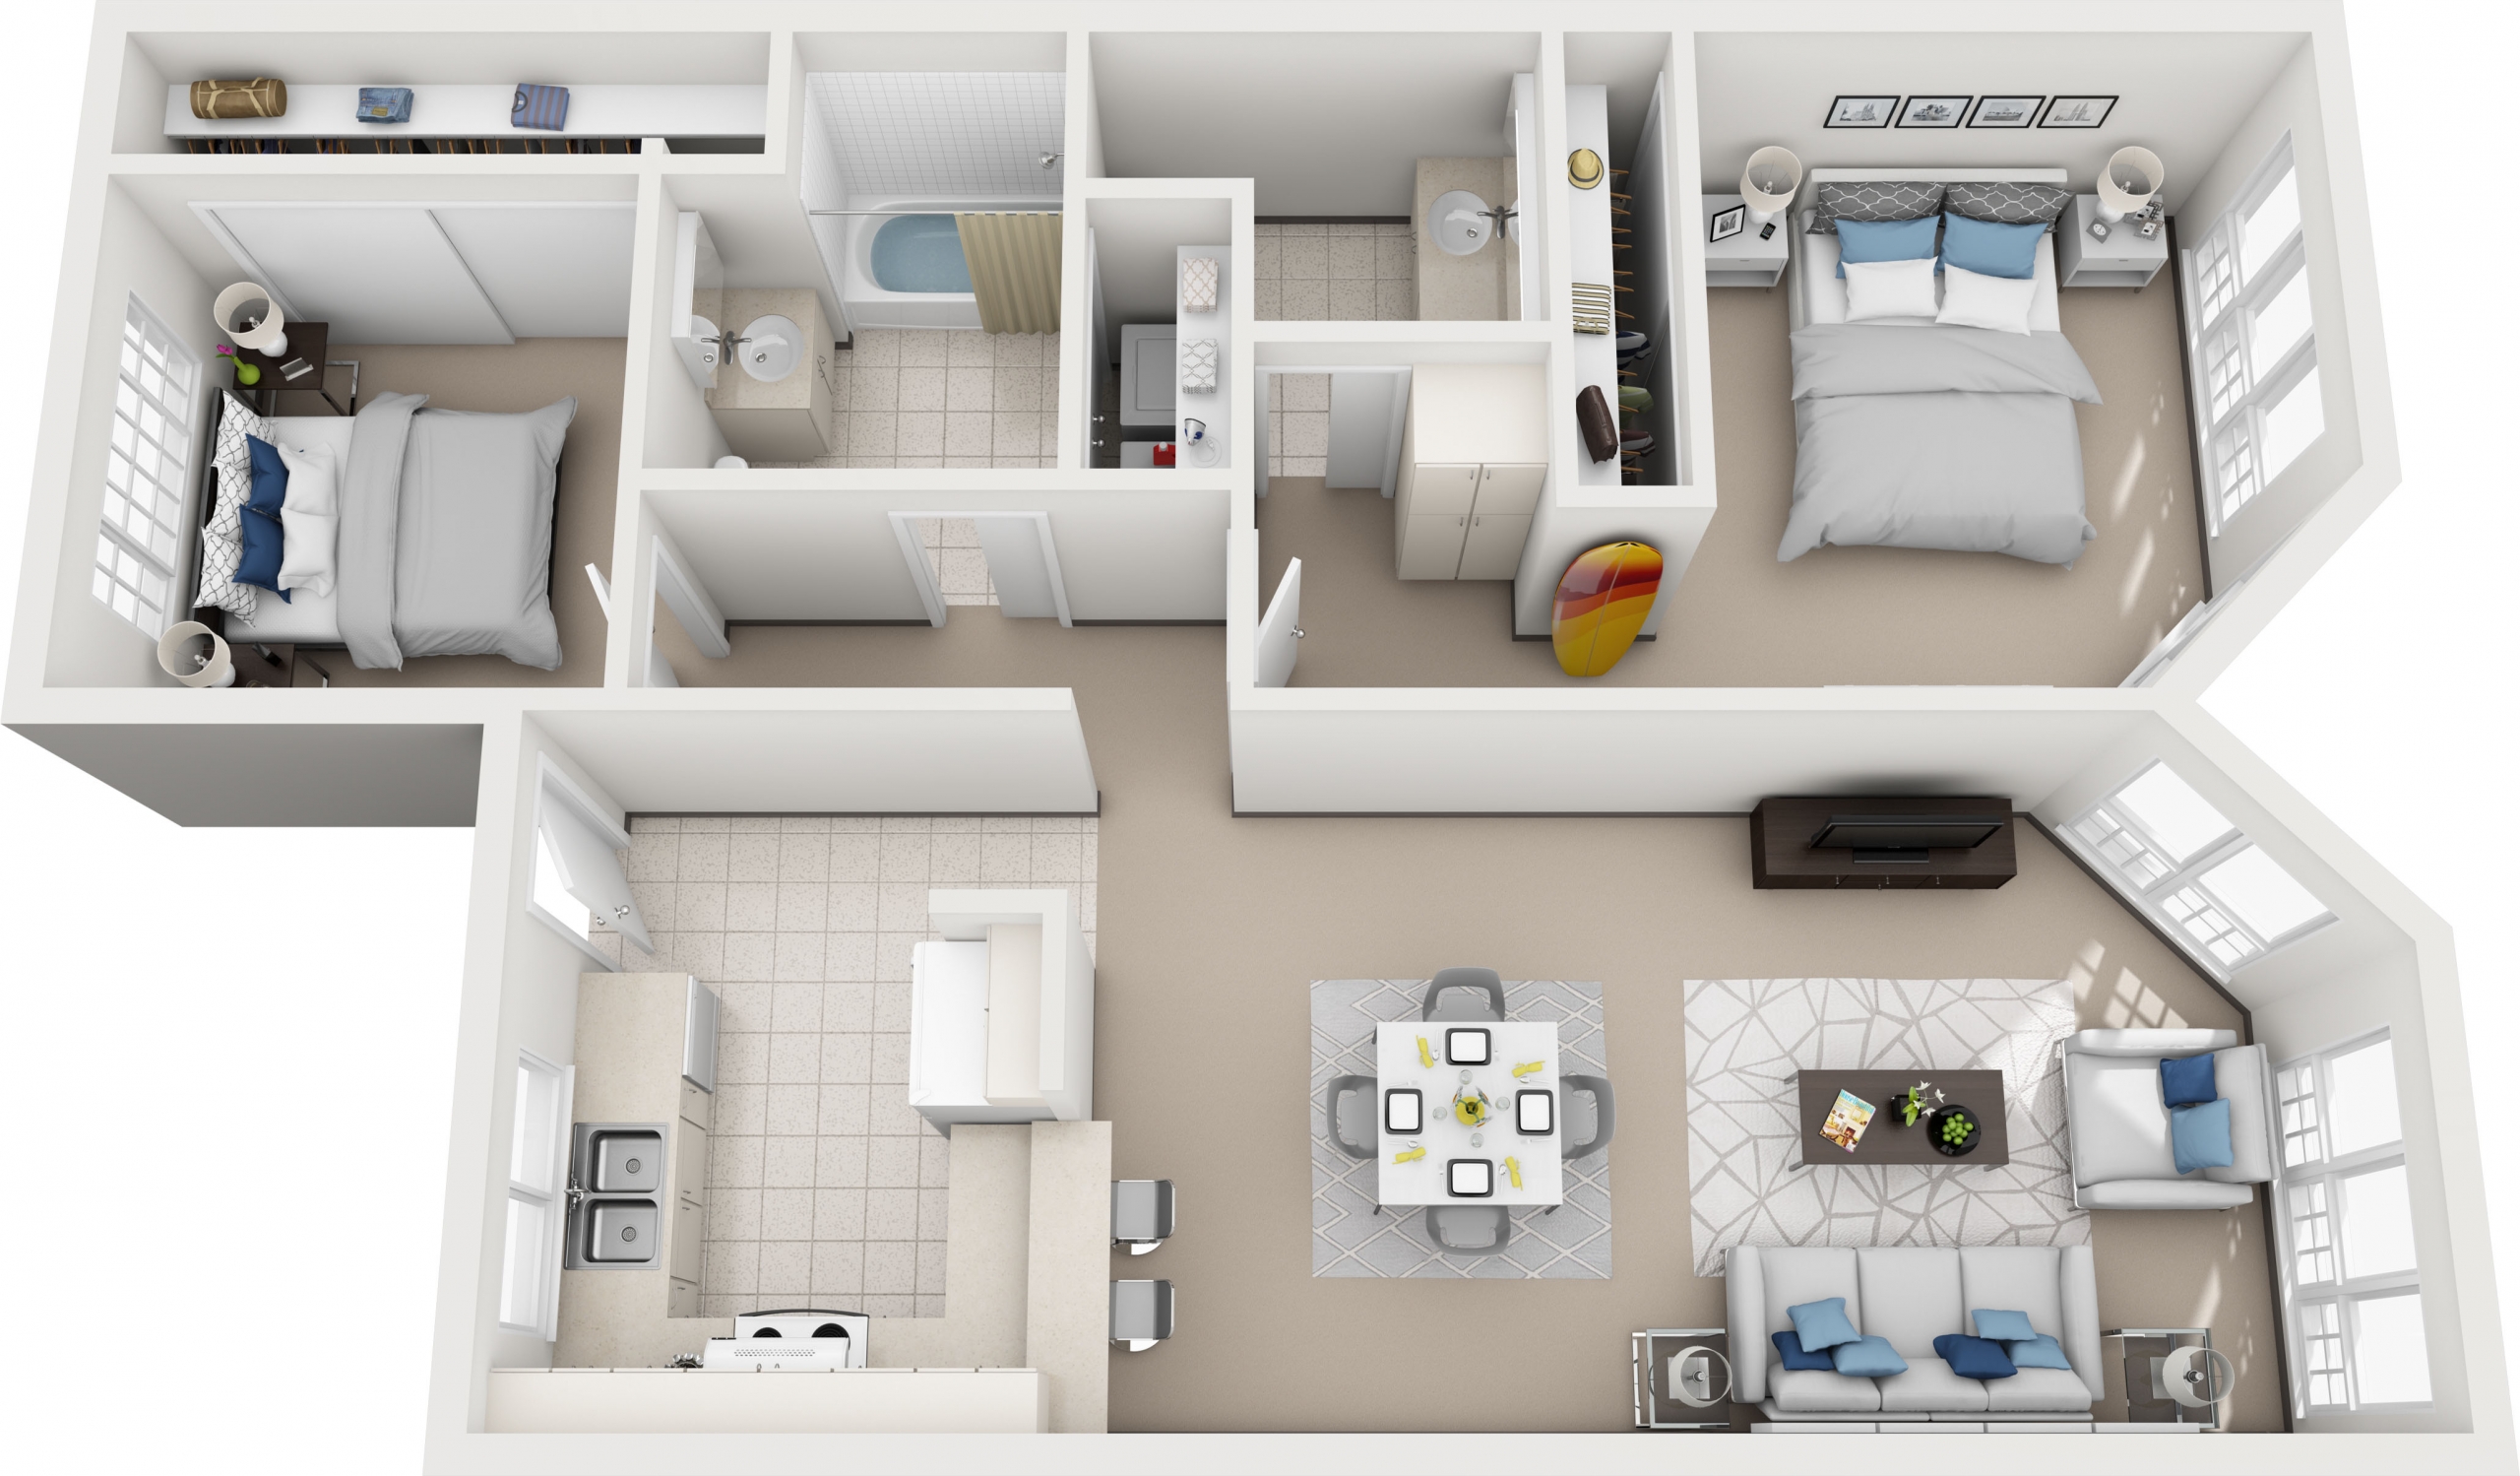 Model F - 2 bedroom apartment floor plan at Villas at Royal Kunia